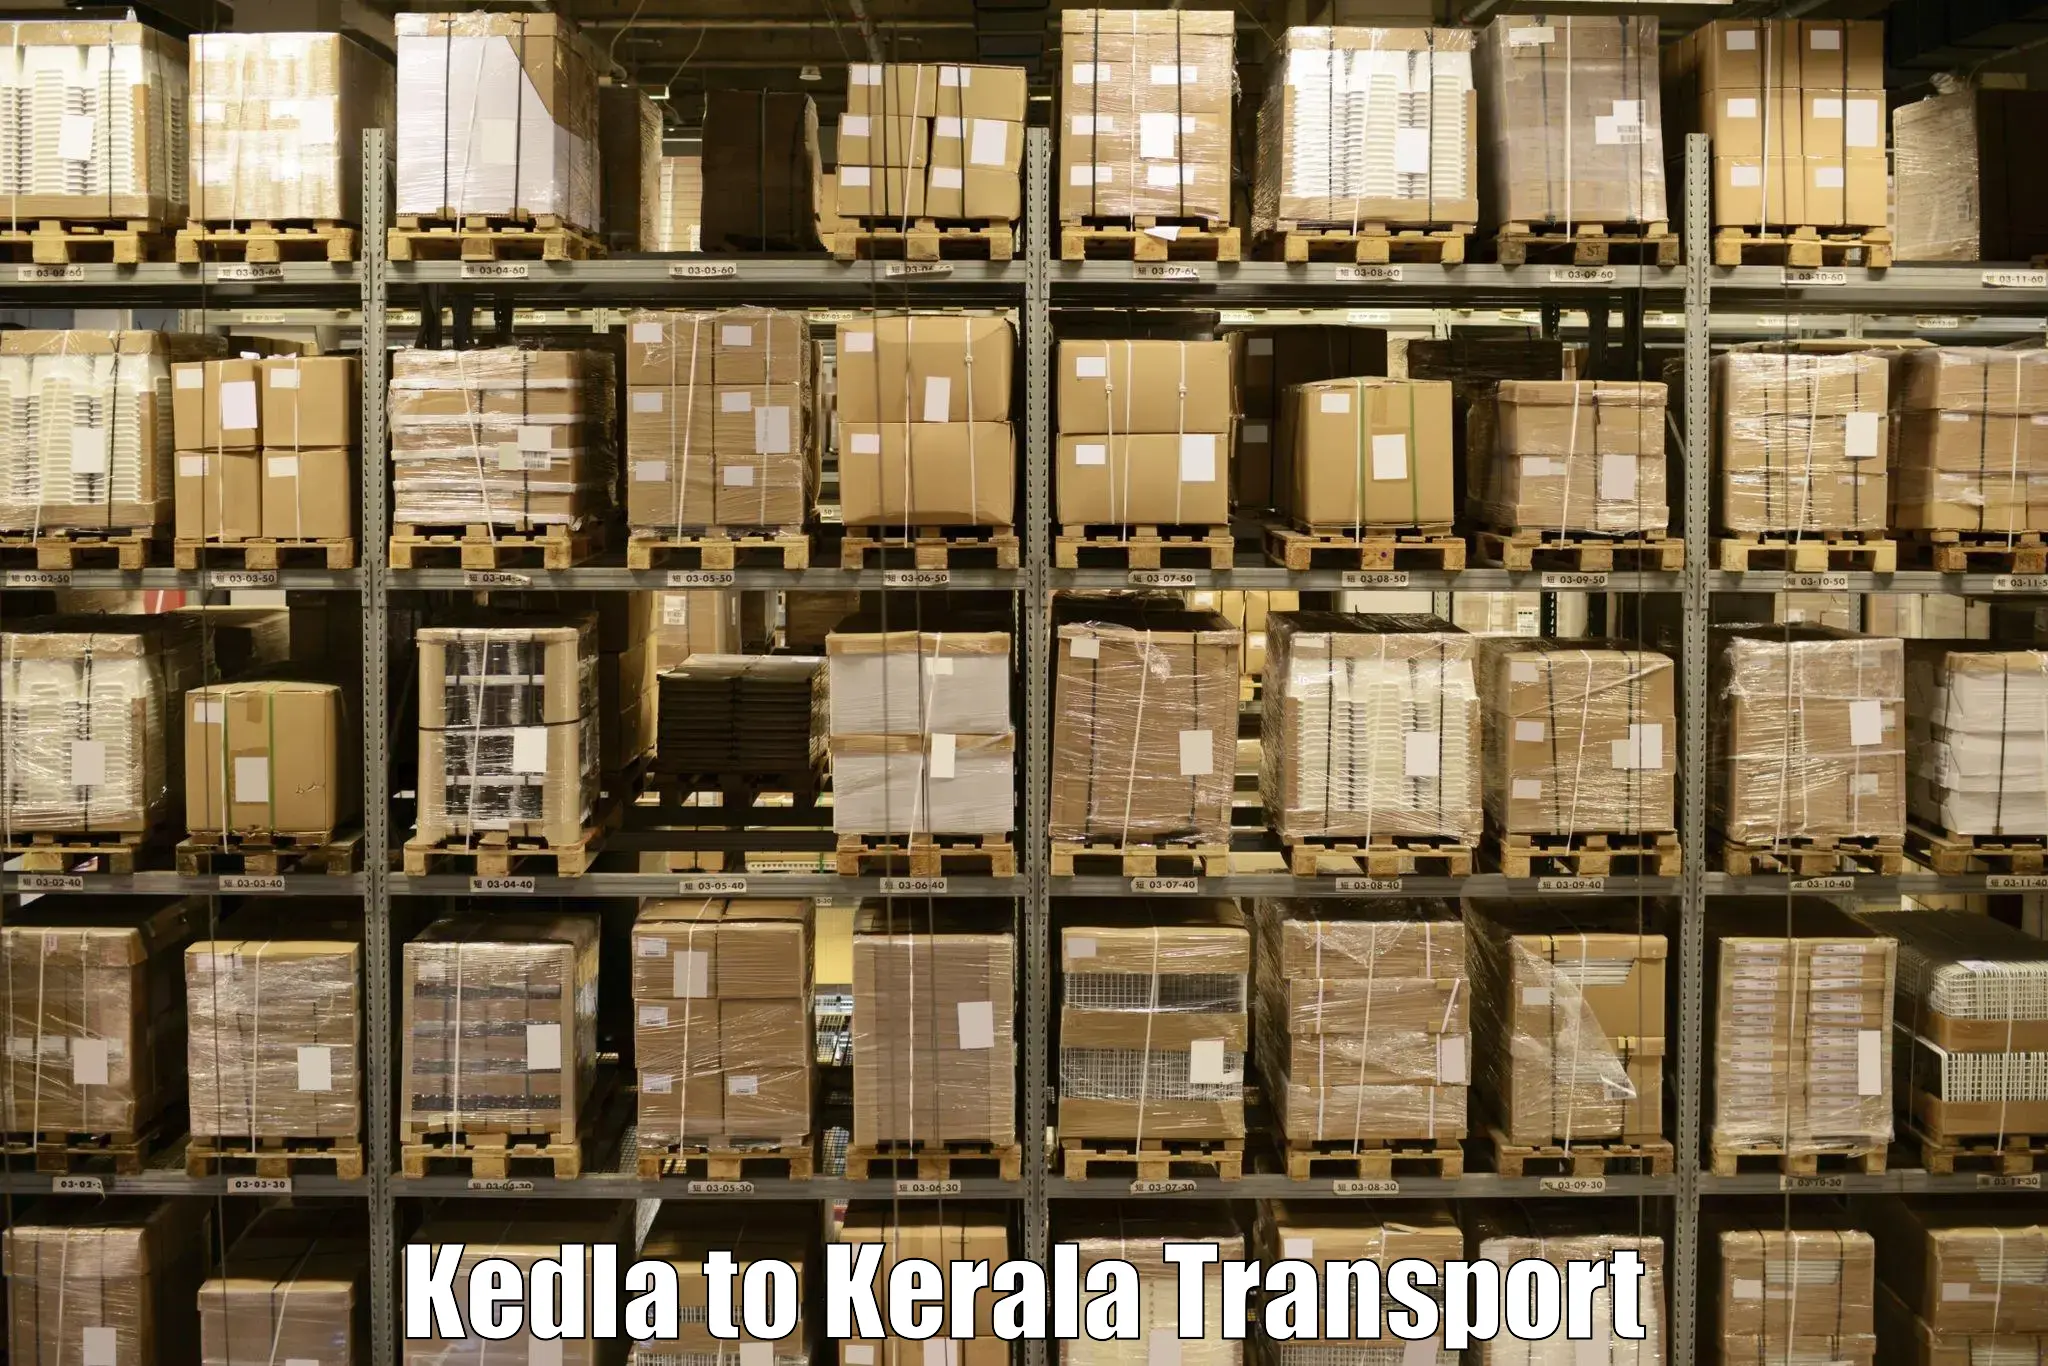 Transportation solution services Kedla to Nenmara